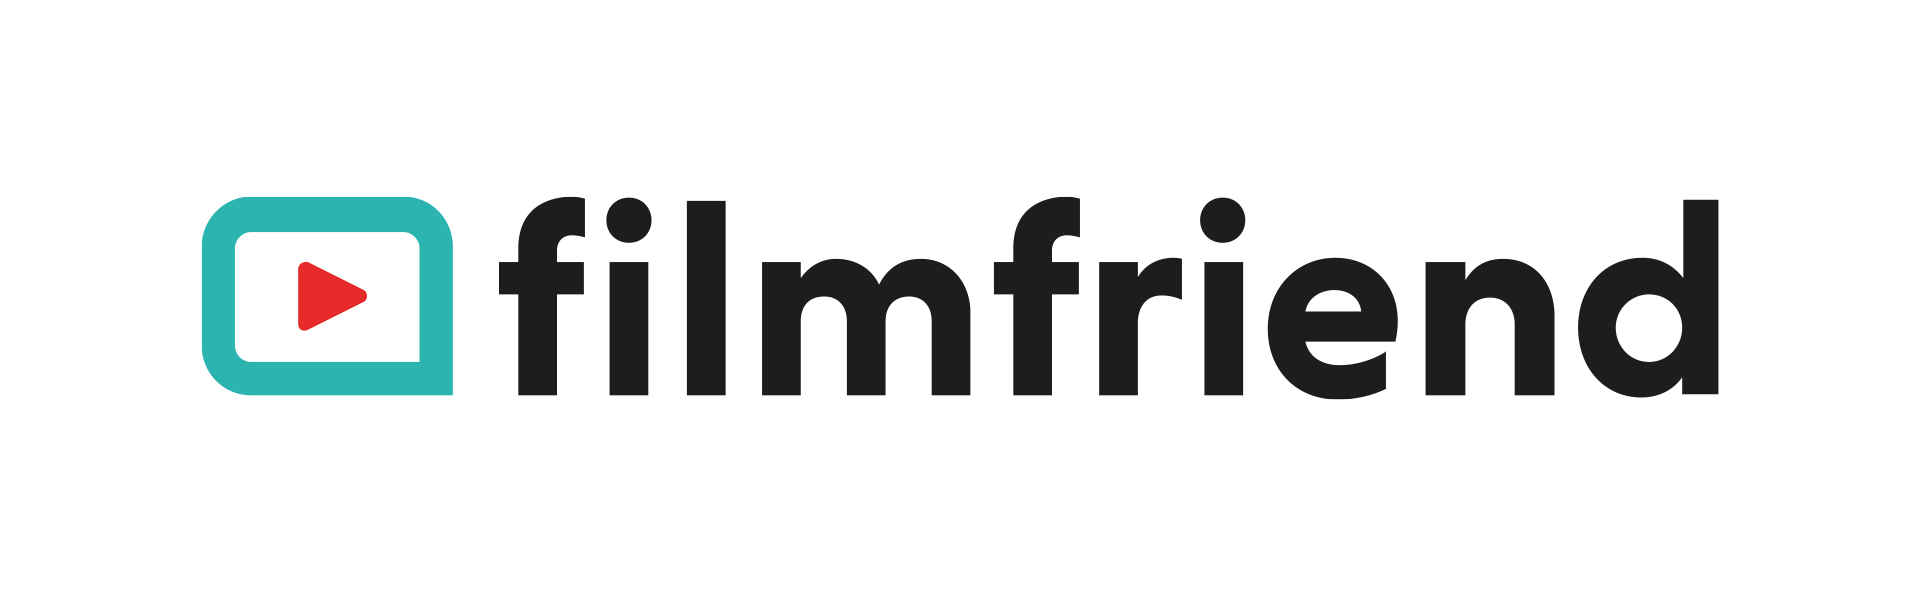 1.2 Logo filmfriend schwarz transparent